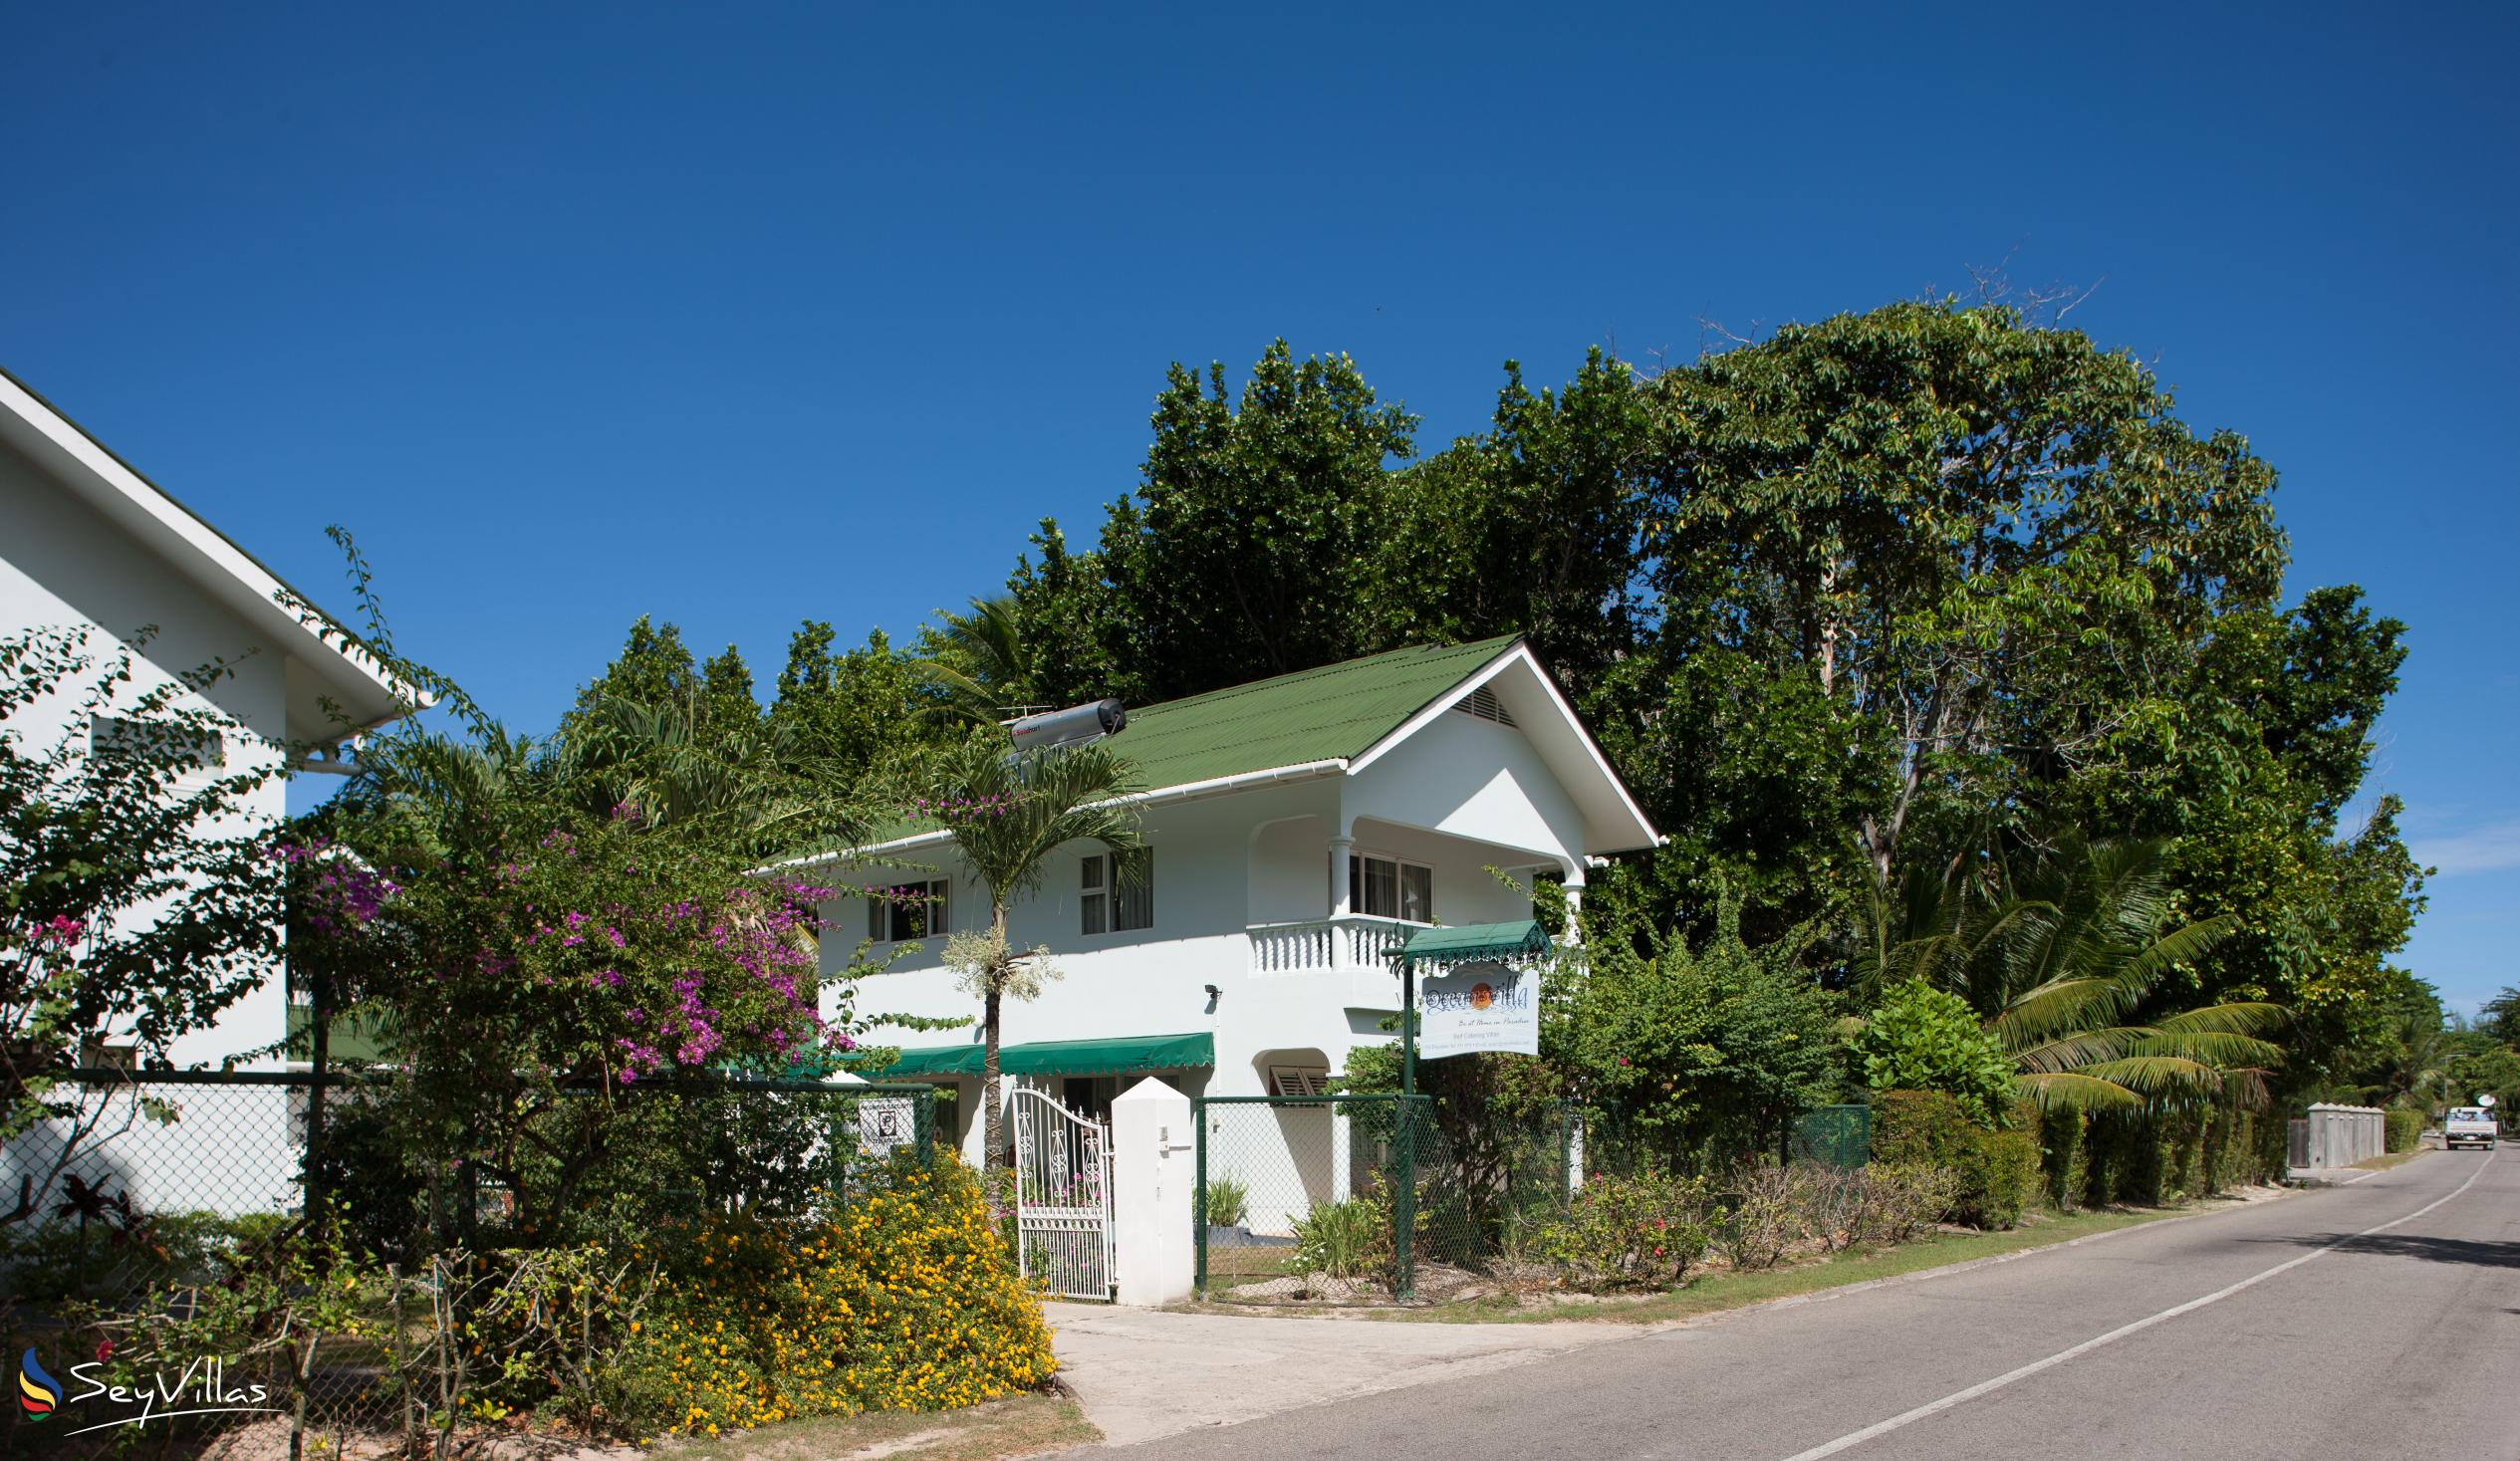 Foto 8: Ocean Villa - Aussenbereich - Praslin (Seychellen)